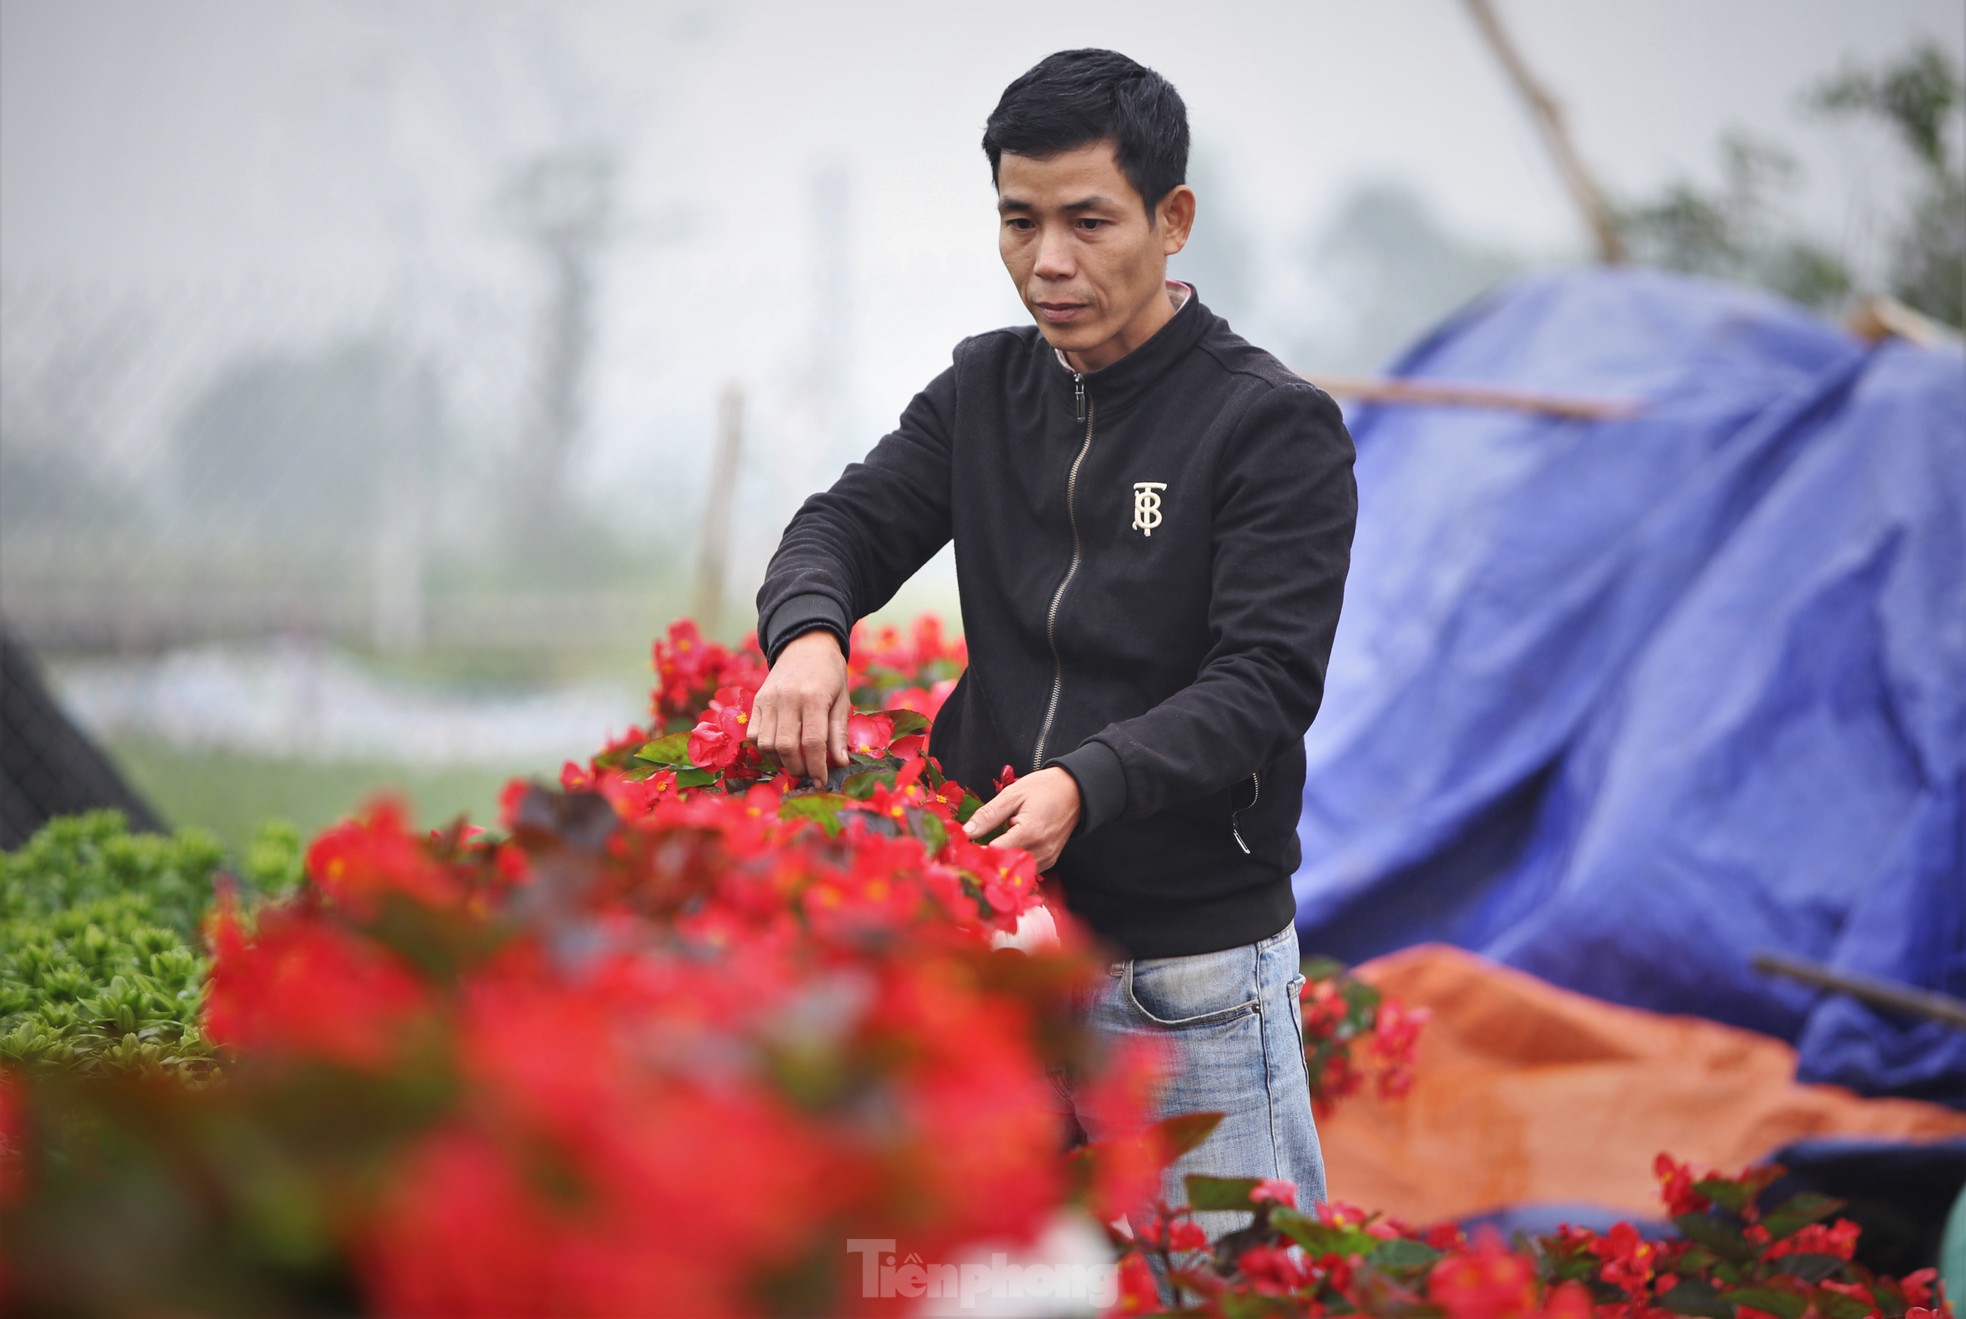 Khu vườn hoa ly 50.000 cây giá tiền tỷ của chàng trai Hà Tĩnh - Ảnh 9.